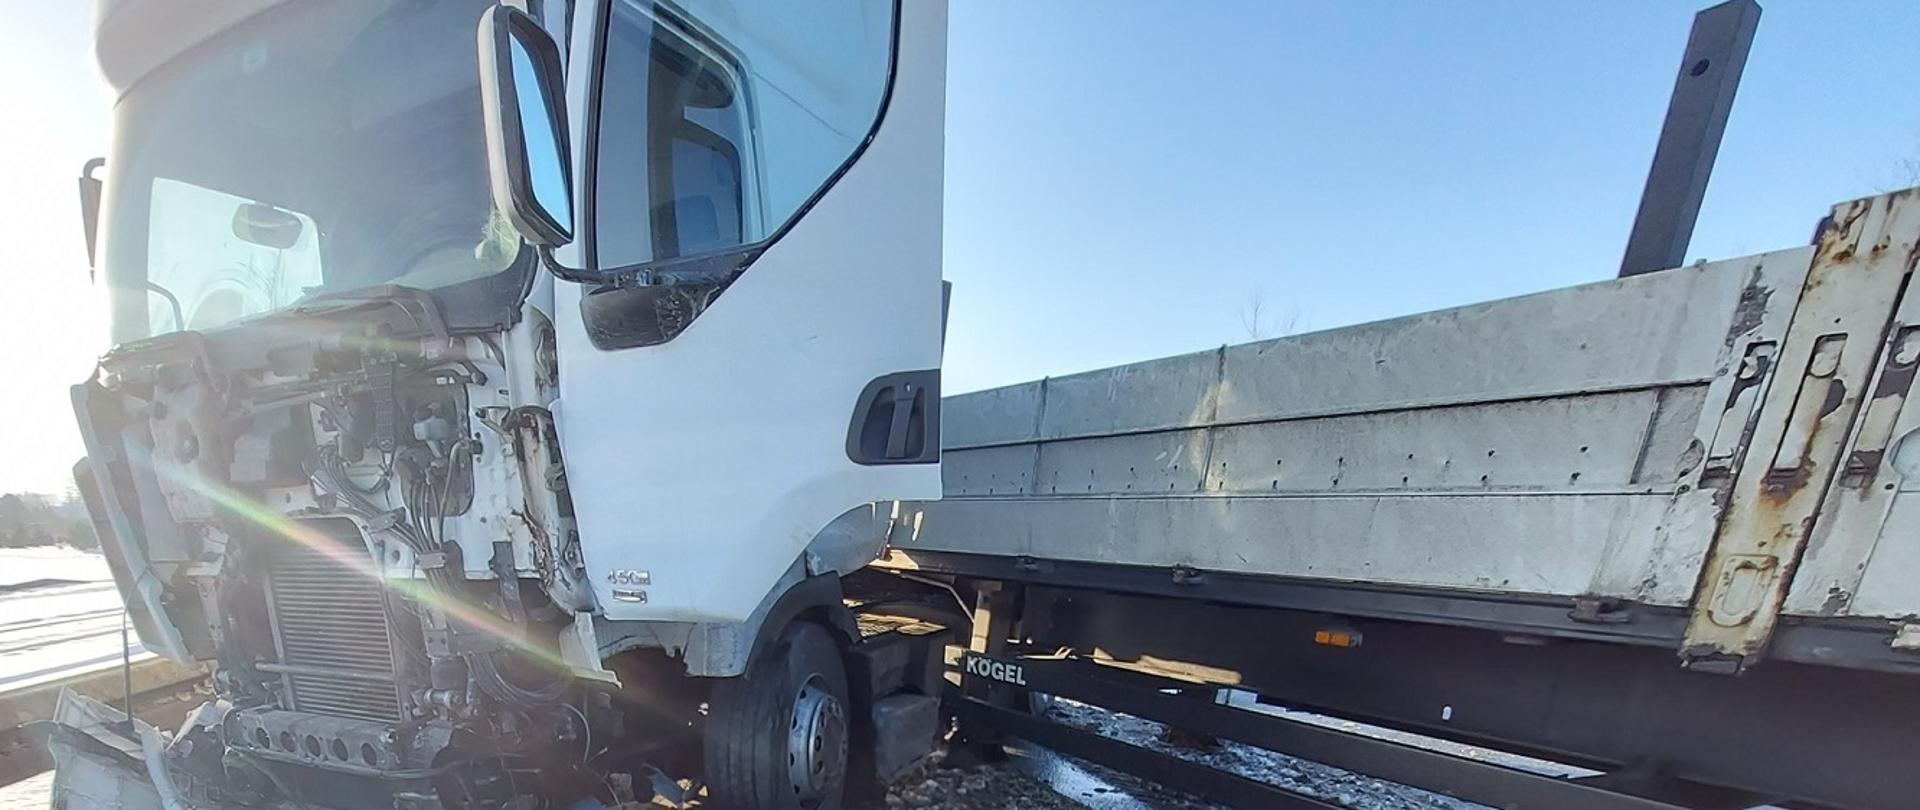 Zdjęcie przedstawia uszkodzony samochód ciężarowy z naczepą po wypadku drogowym. Pojazd stoi w poprzek jezdni blokując przejazd